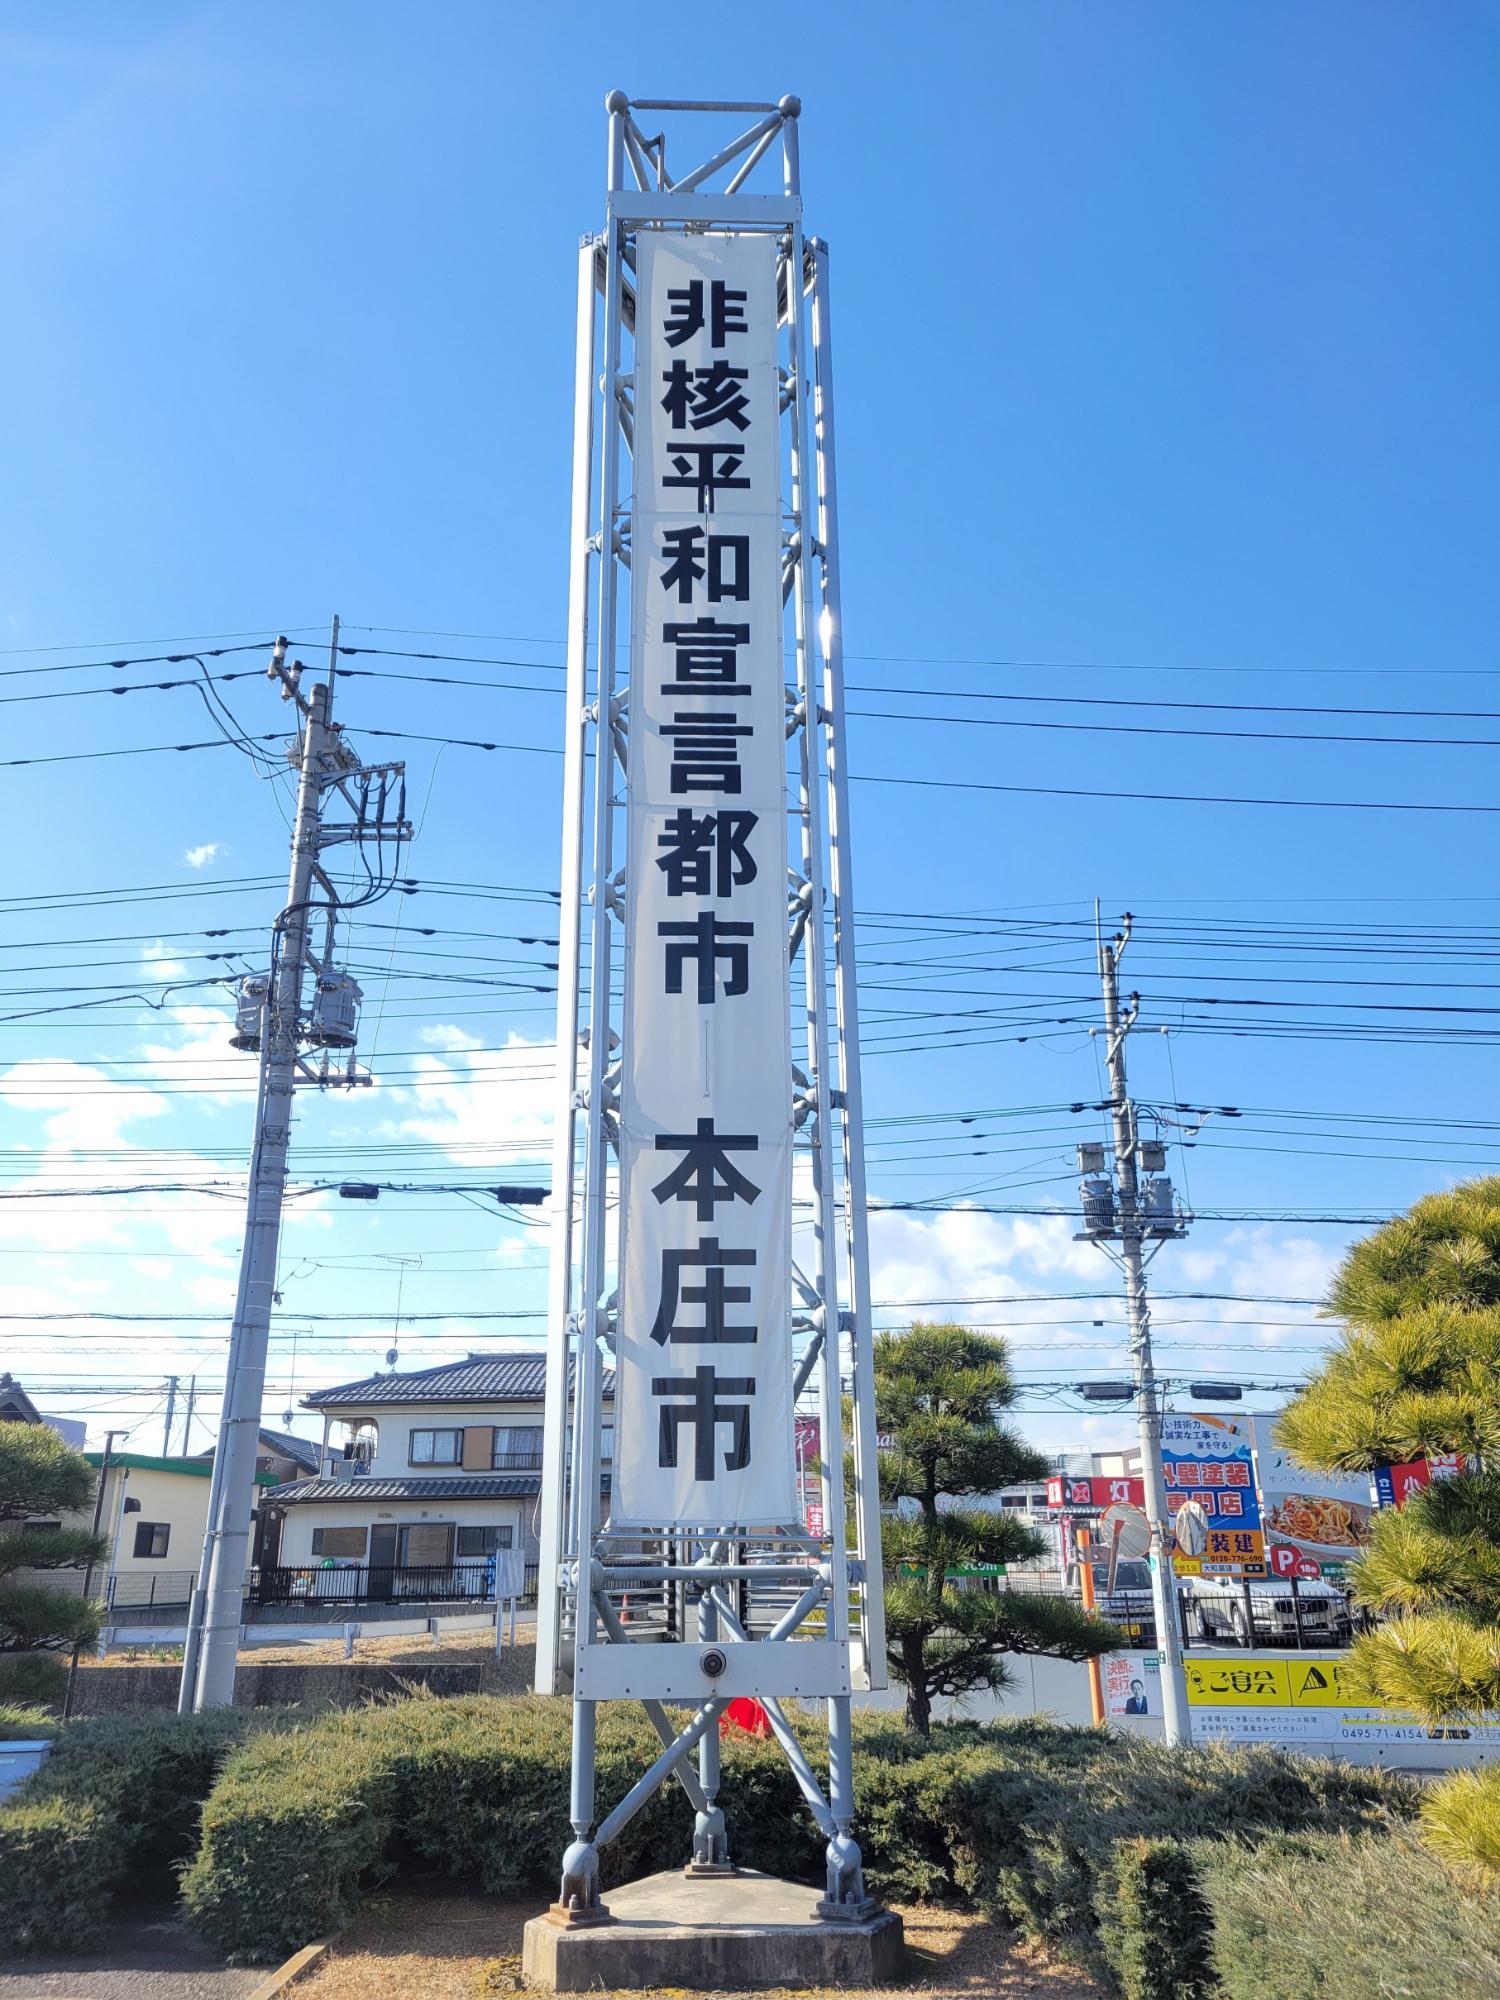 本庁舎の非核平和宣言都市本庄市と書かれた懸垂幕の写真